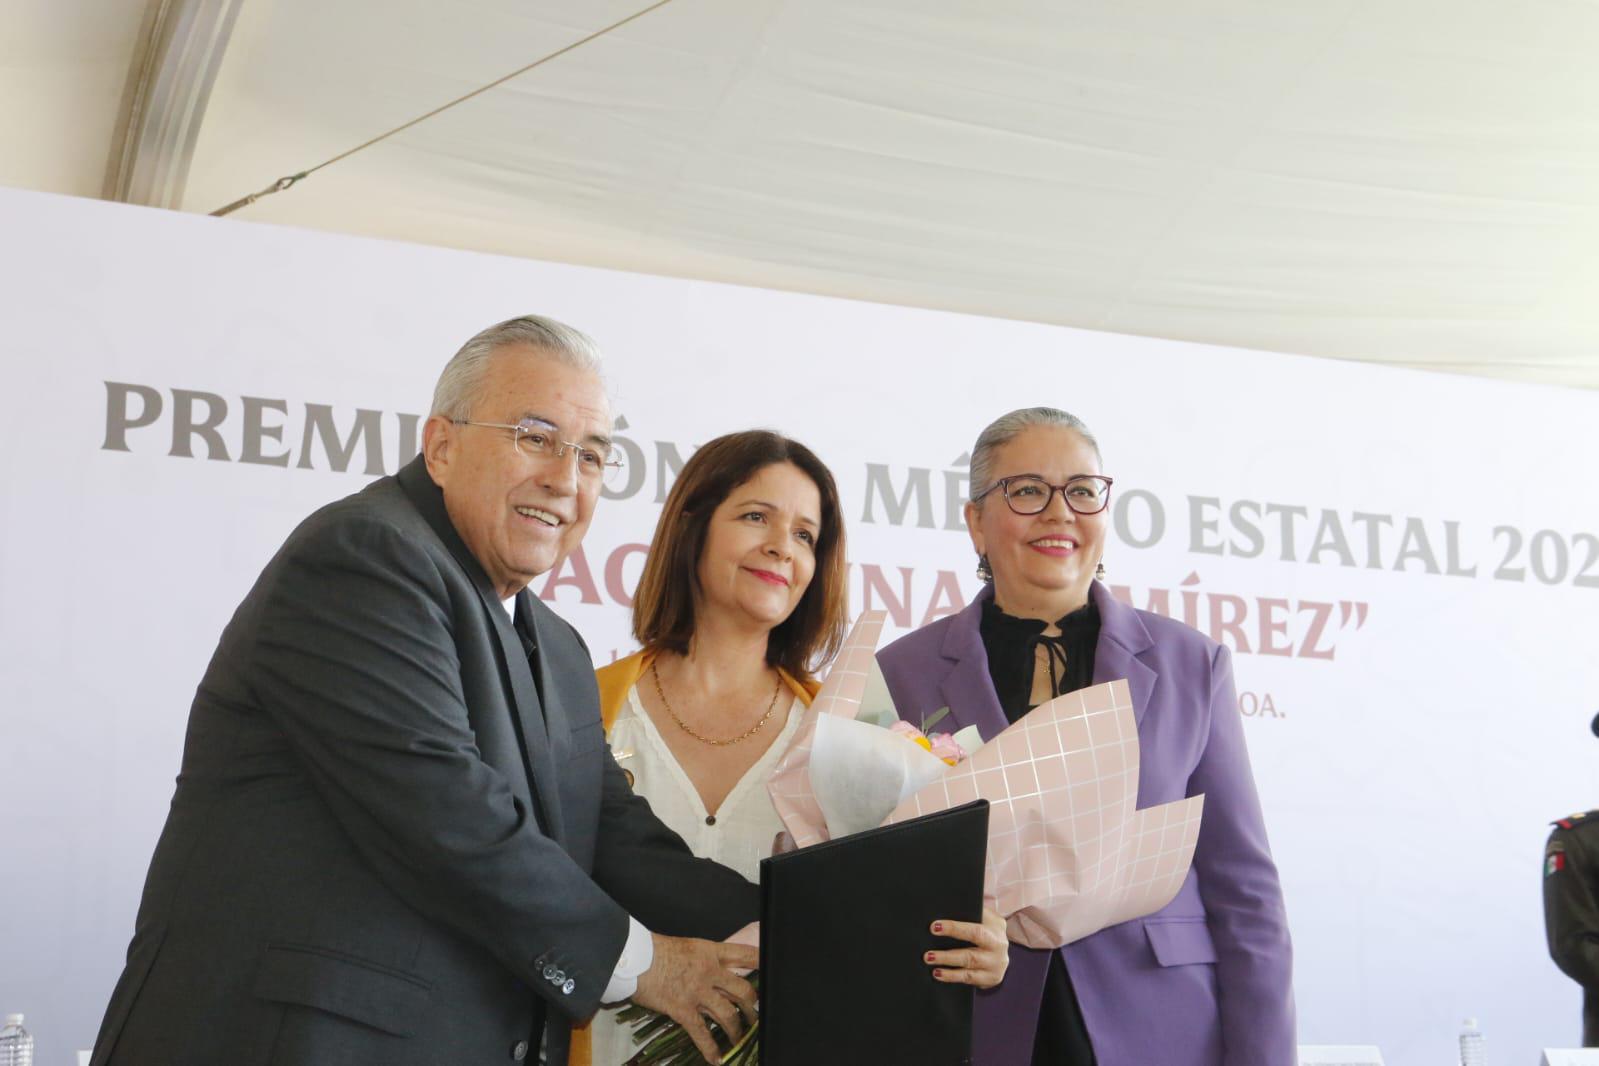 $!Reconocen a la mazatleca Marisol Lizárraga con Premio Agustina Ramírez 2024